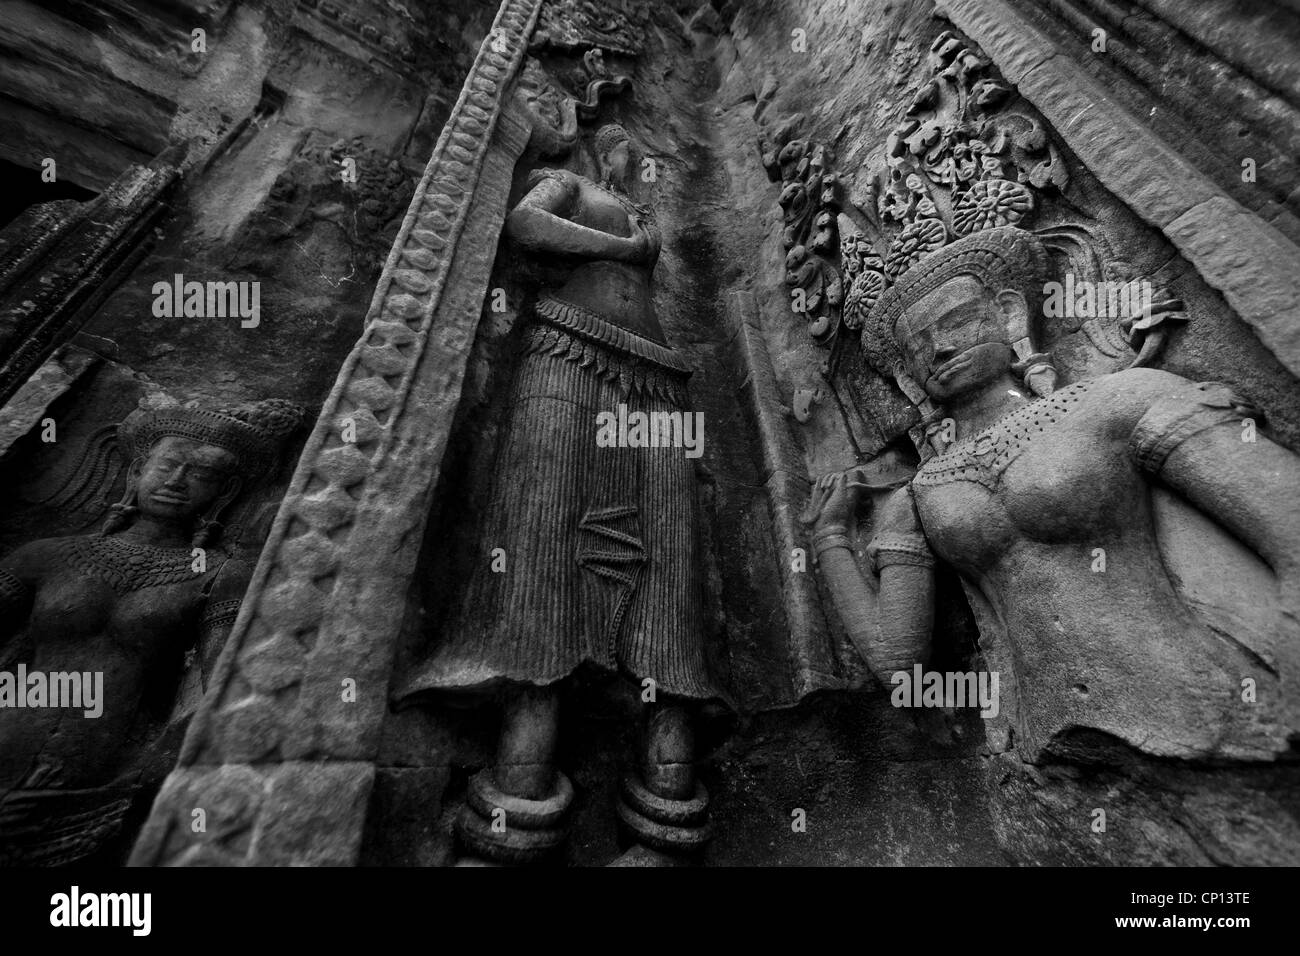 Un Apsaras, relieve de piedra tallada en el templo de Ta Keo en Asia, Angkor Wat, Camboya Foto de stock